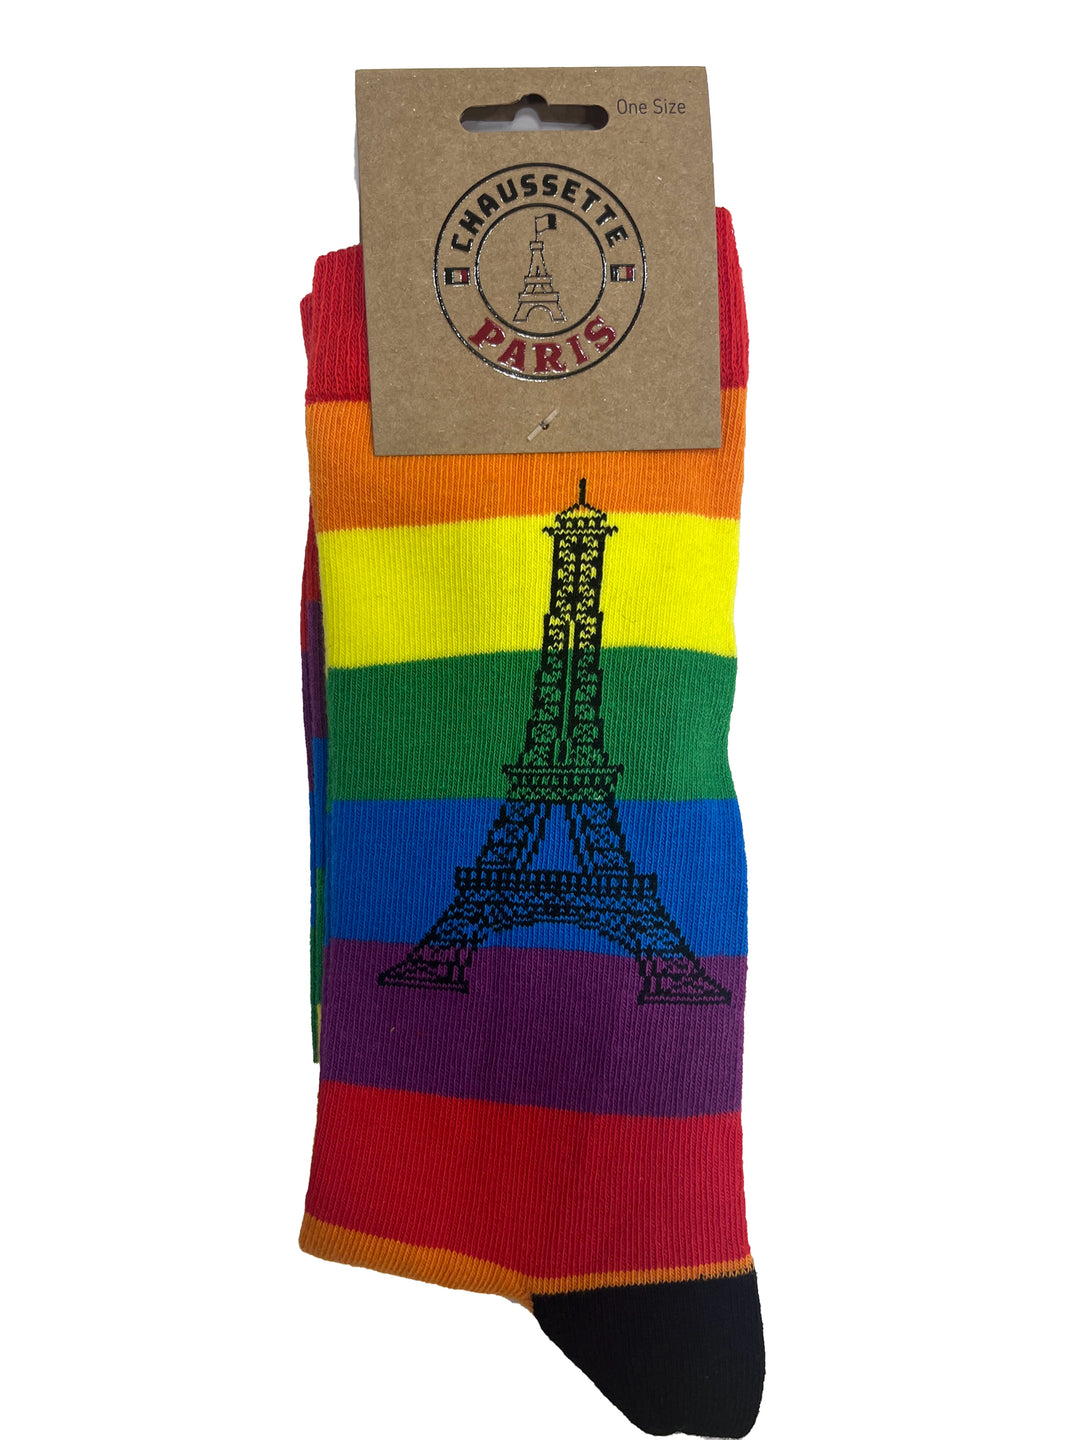 Chaussettes LGBT arc-en-ciel avec tour Eiffel